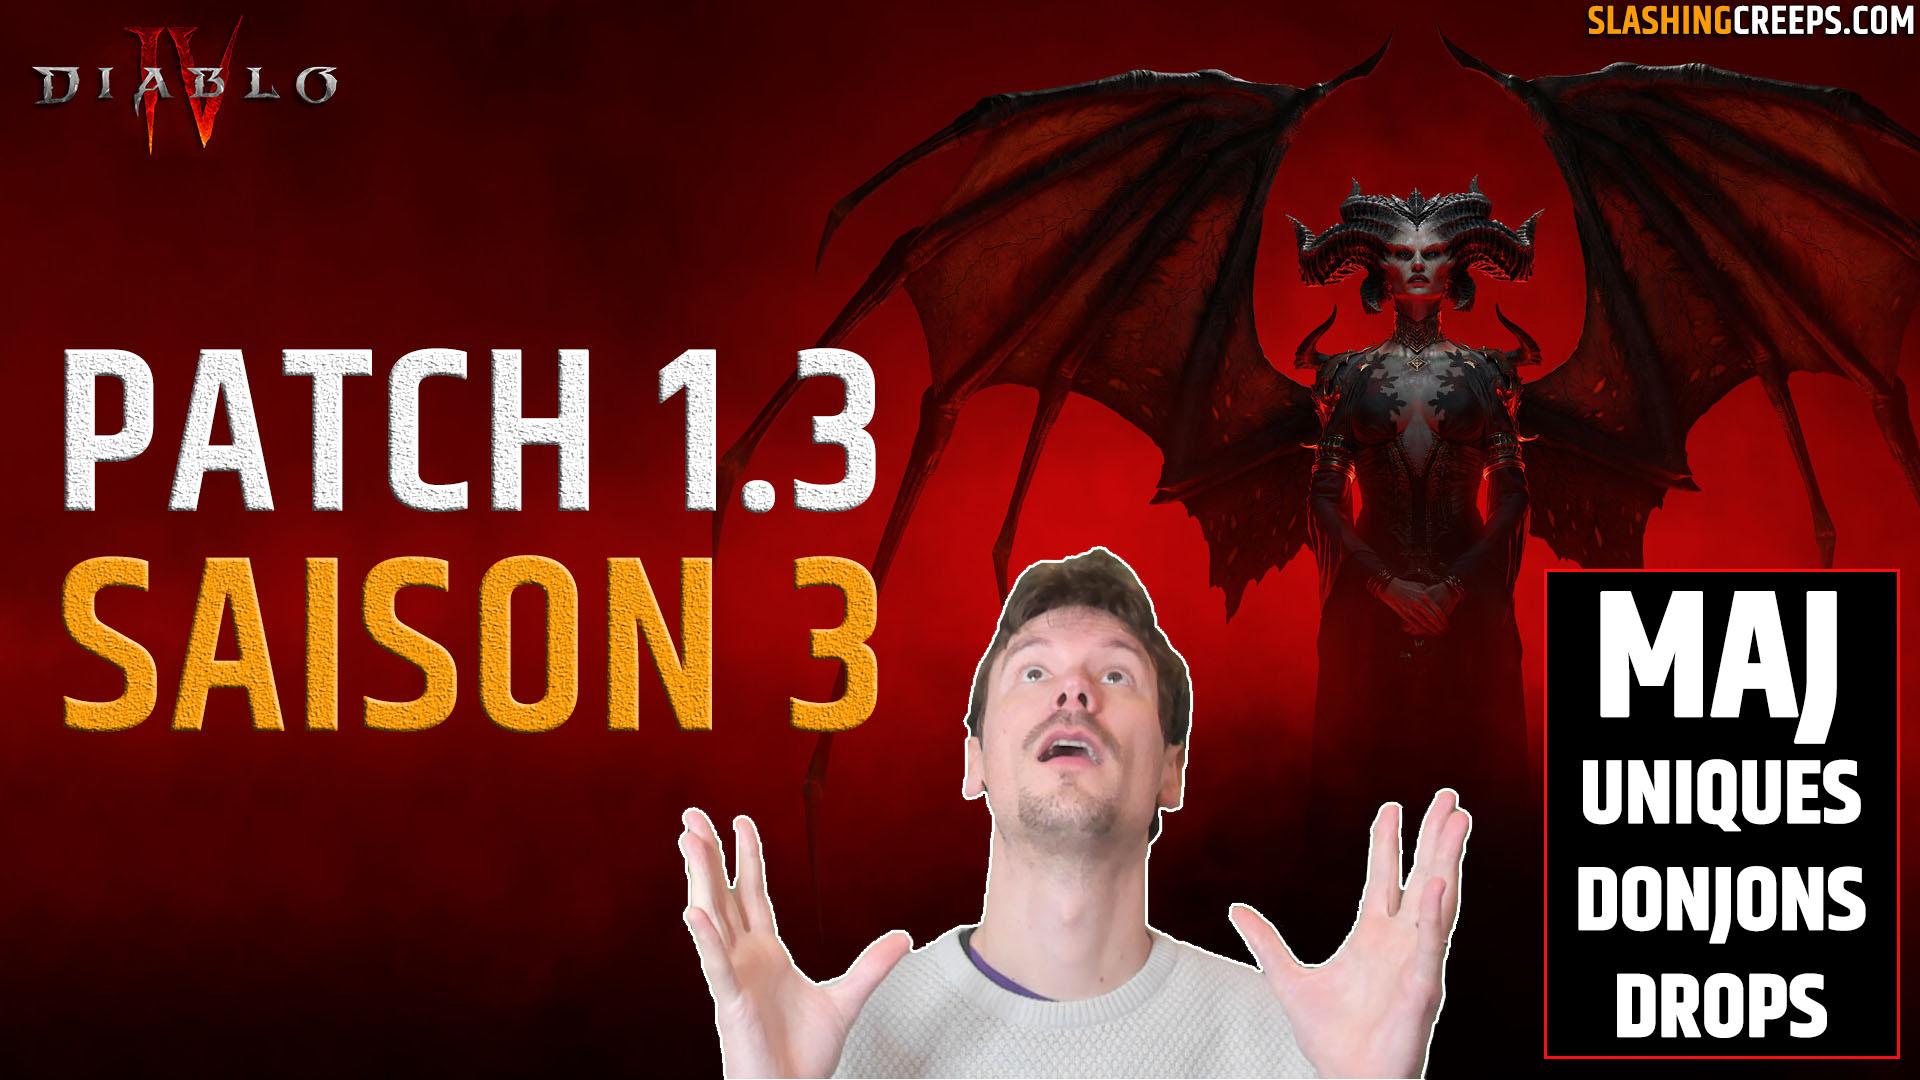 Patch 1.3 Saison 3 Diablo 4, les drosp d'uniques, donjons de cauchemar et boss de monde